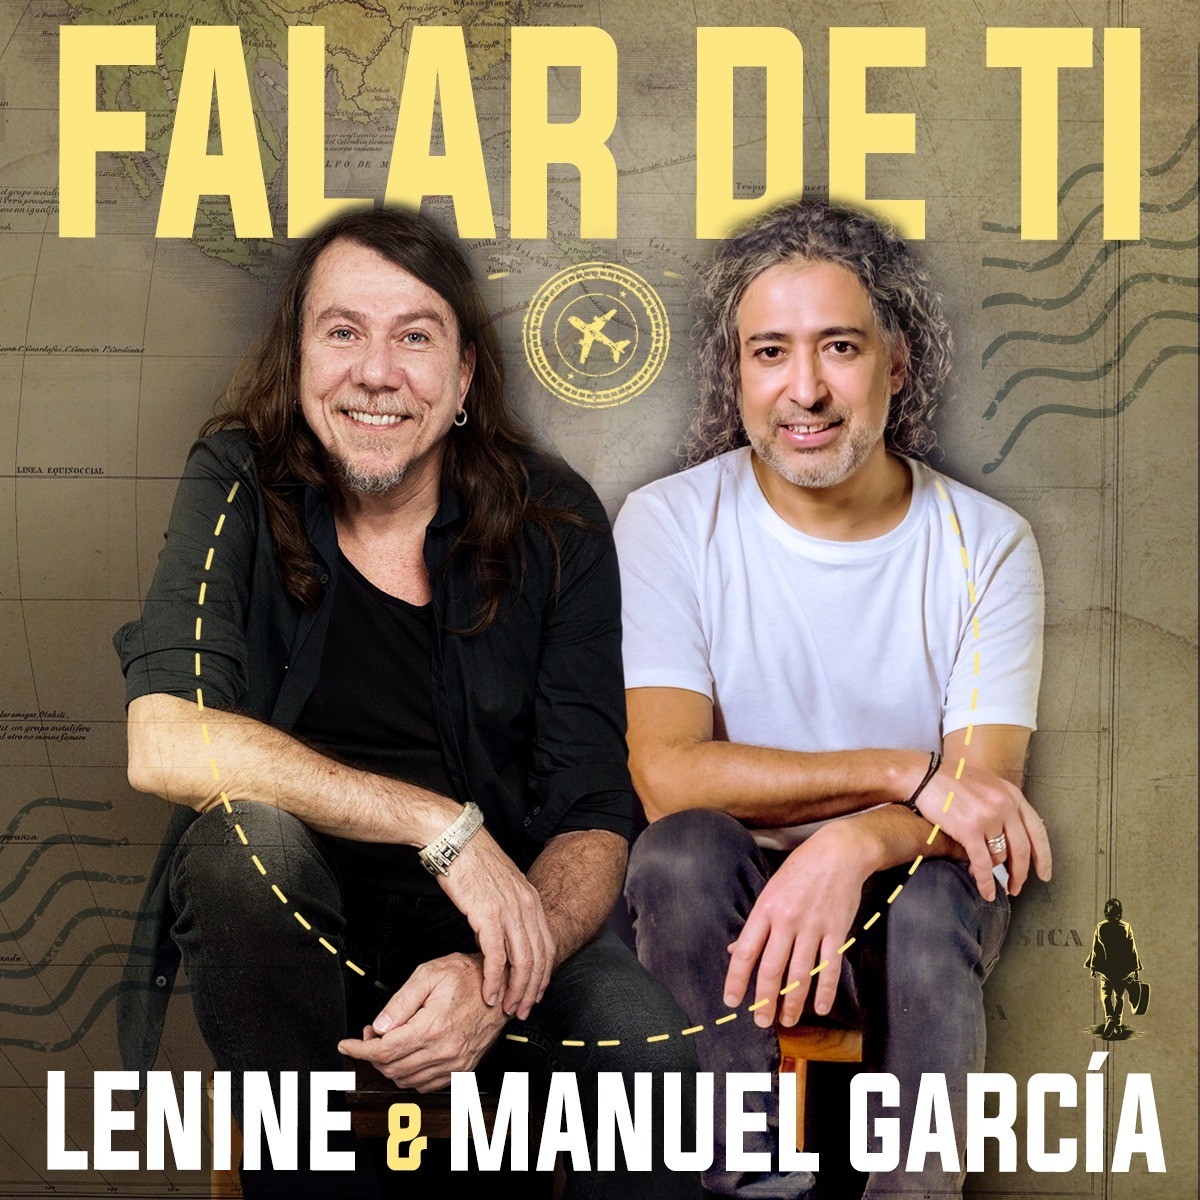 Lenine sigue la banda sonora chilena de Manuel García en el sencillo ‘Falar de ti’ |  El blog de Mauro Ferreira